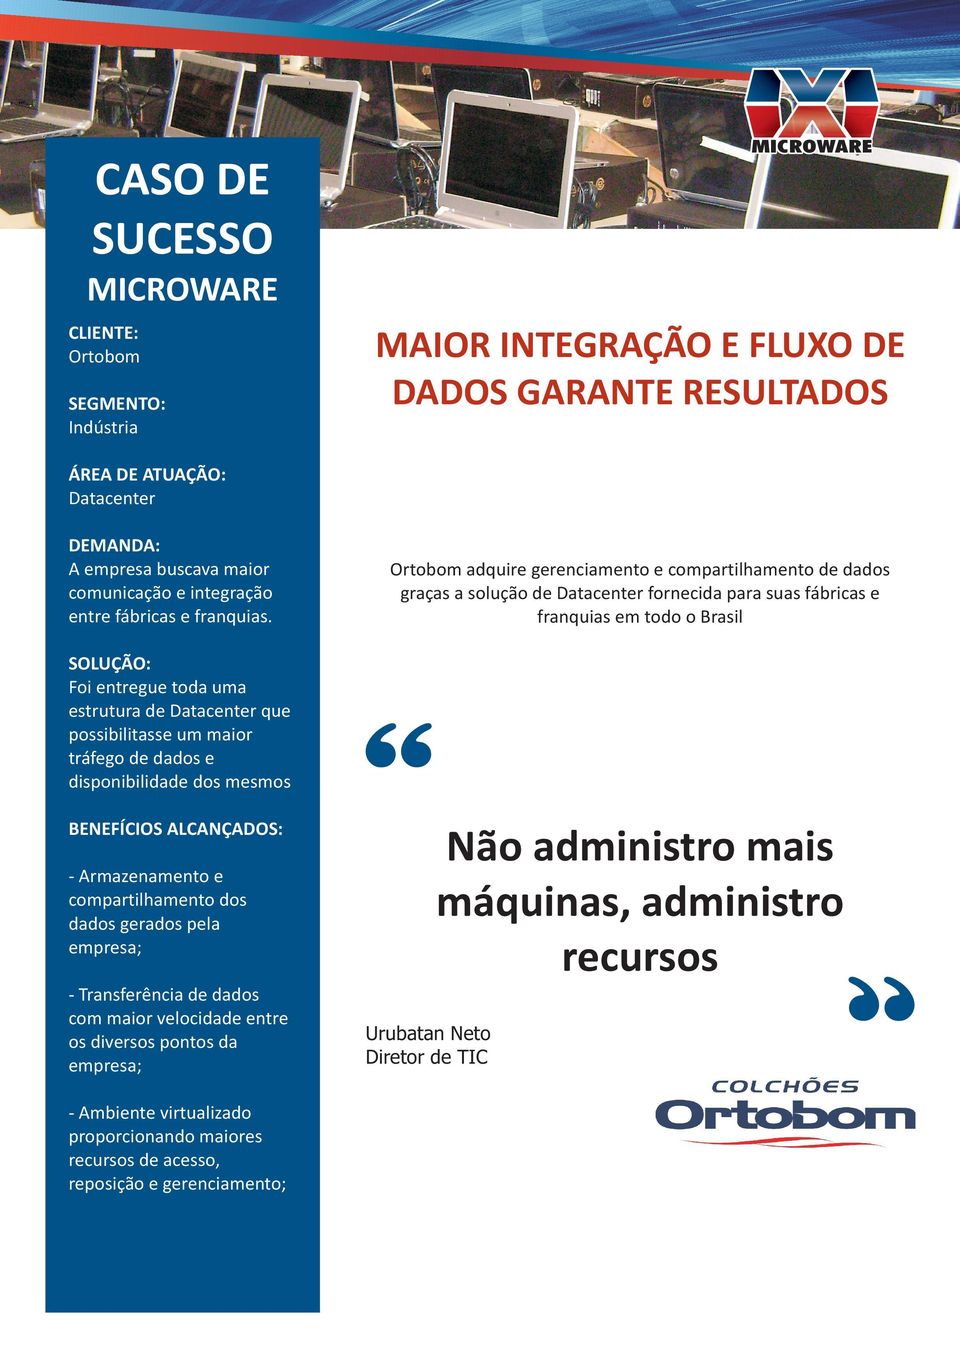 Ortobom adquire gerenciamento e compartilhamento de dados graças a solução de Datacenter fornecida para suas fábricas e franquias em todo o Brasil SOLUÇÃO: Foi entregue toda uma estrutura de